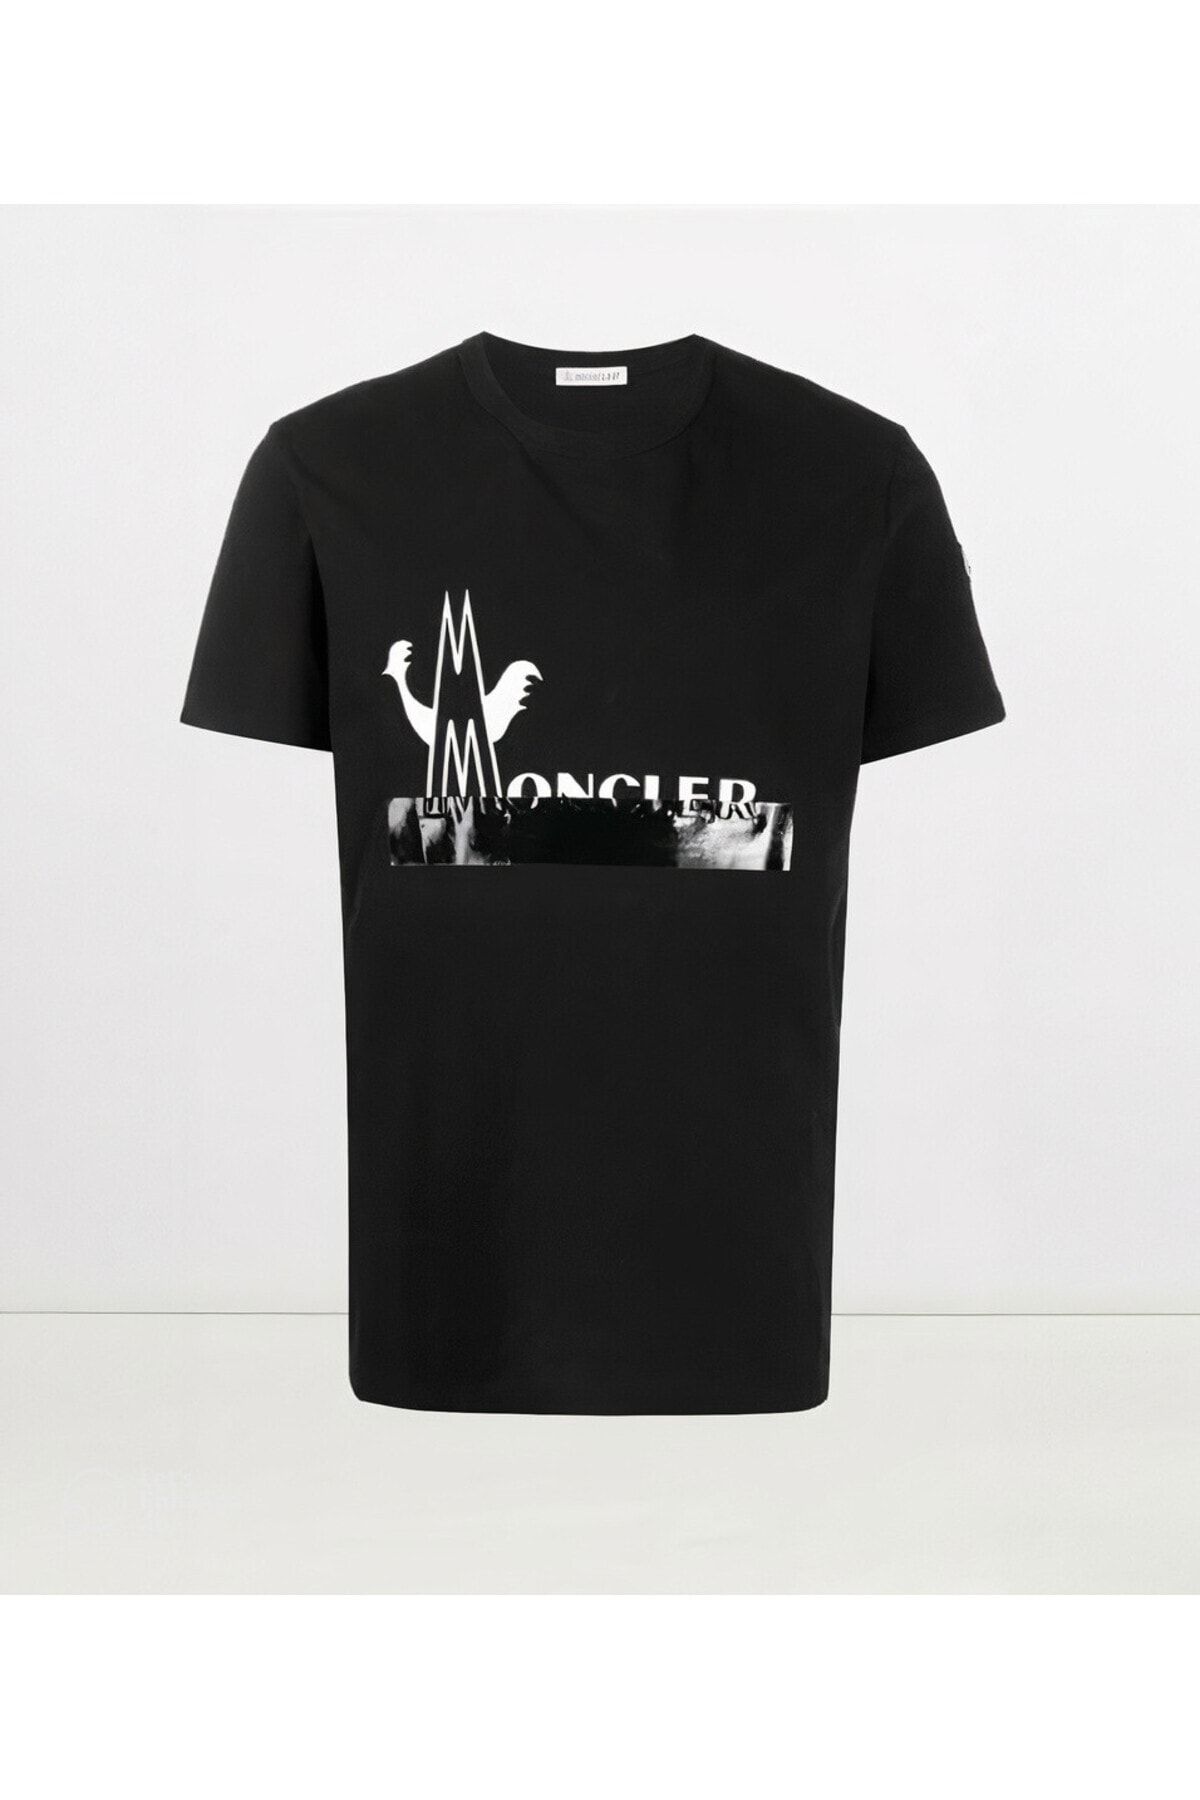 Moncler Logo Printed Siyah T-shirt